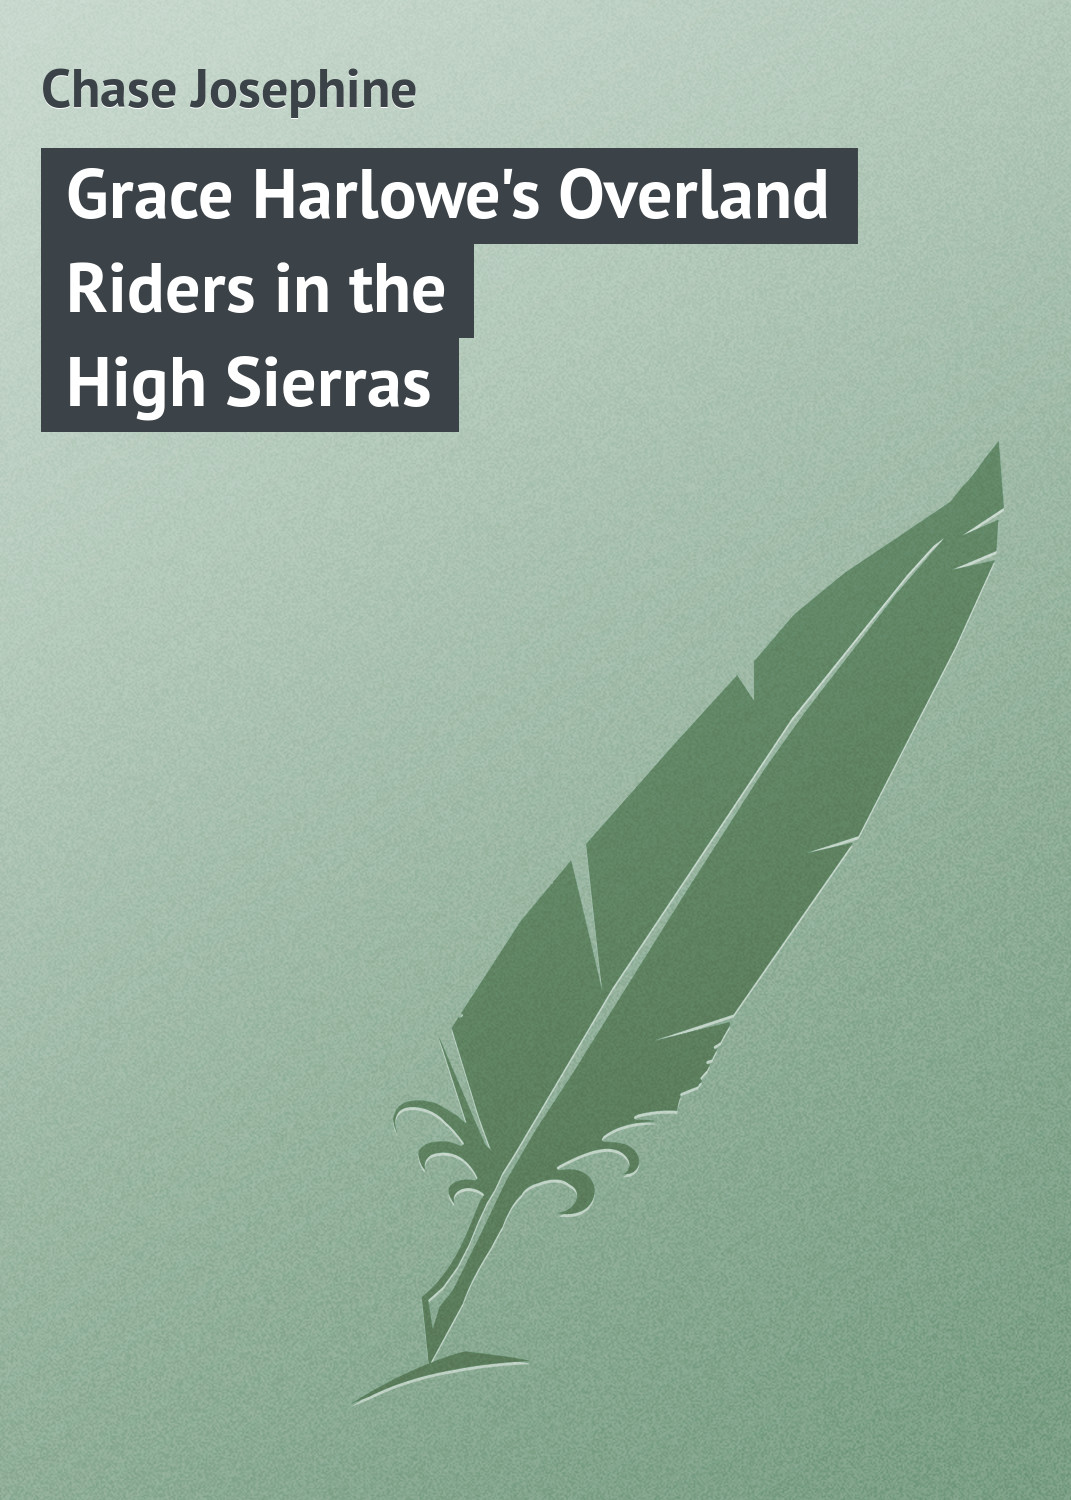 Книга Grace Harlowe's Overland Riders in the High Sierras из серии , созданная Chase Josephine, может относится к жанру Зарубежная классика. Стоимость электронной книги Grace Harlowe's Overland Riders in the High Sierras с идентификатором 23148971 составляет 5.99 руб.